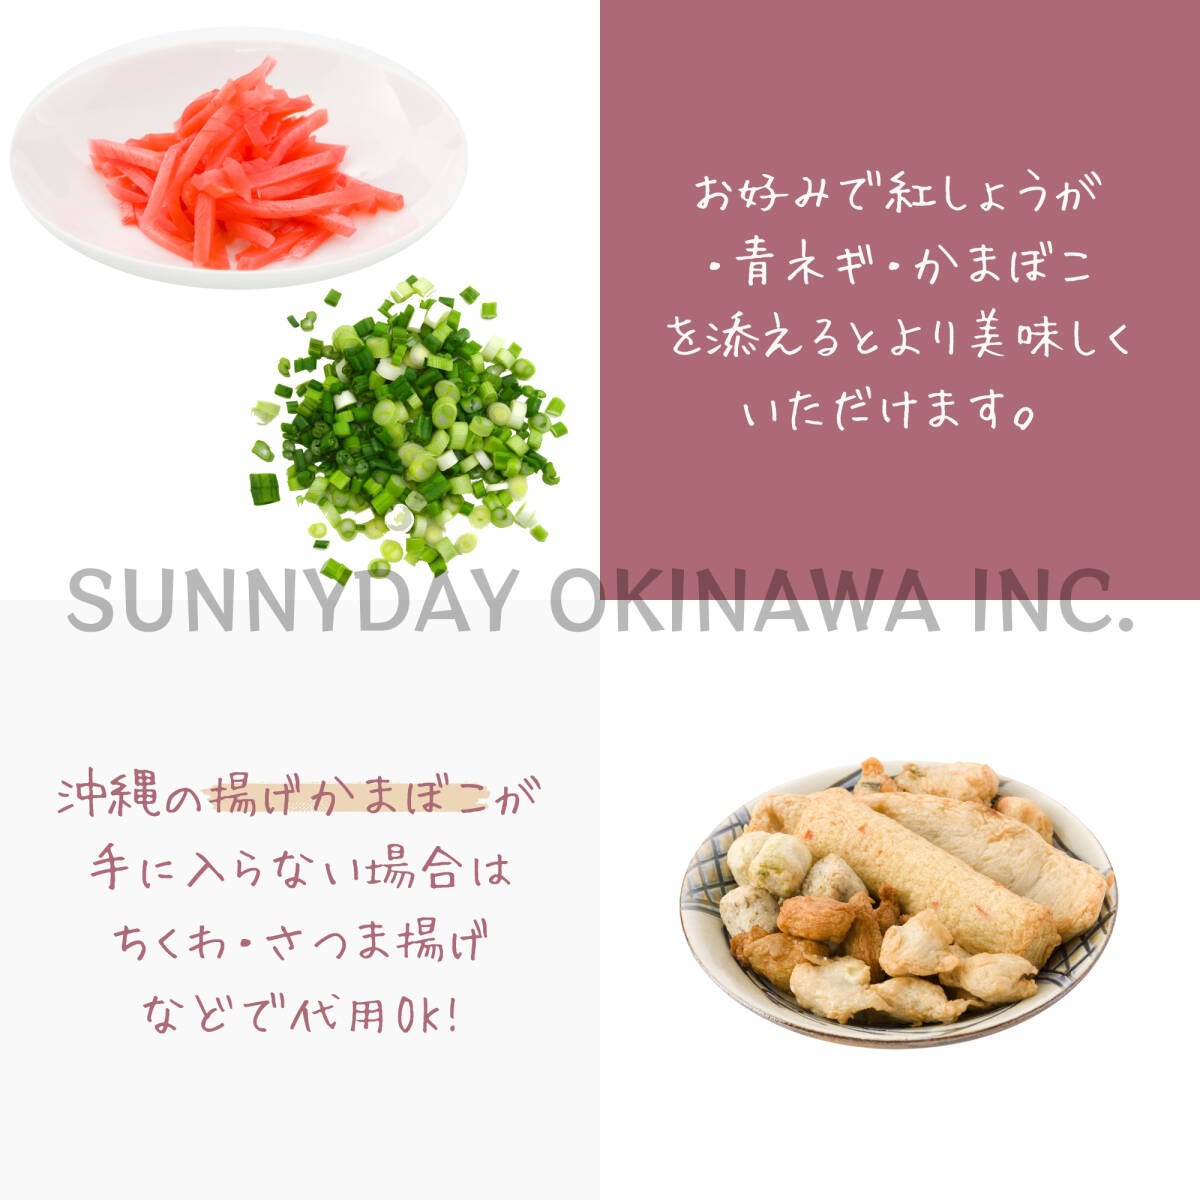  три листов мясо соба 5 пакет 5 порции сырой Okinawa соба [ средний futoshi. flat лапша ]. Naha производства лапша рагу рафуте соба . земля производство ваш заказ 